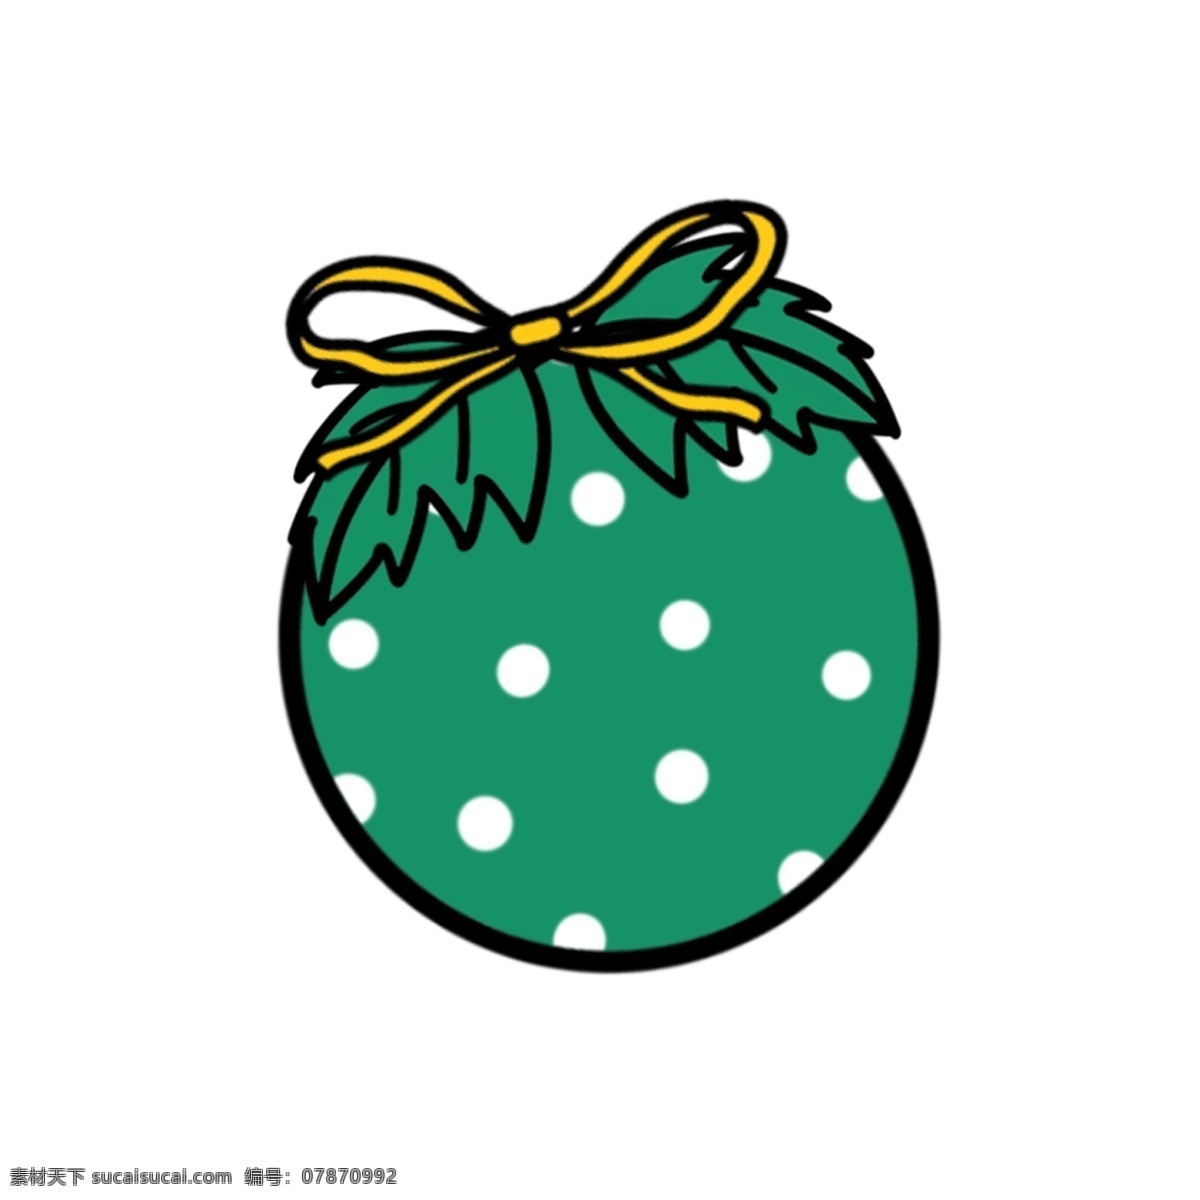 圣诞节 圣诞 装饰 球 卡通 可爱 元素 圣诞装饰球